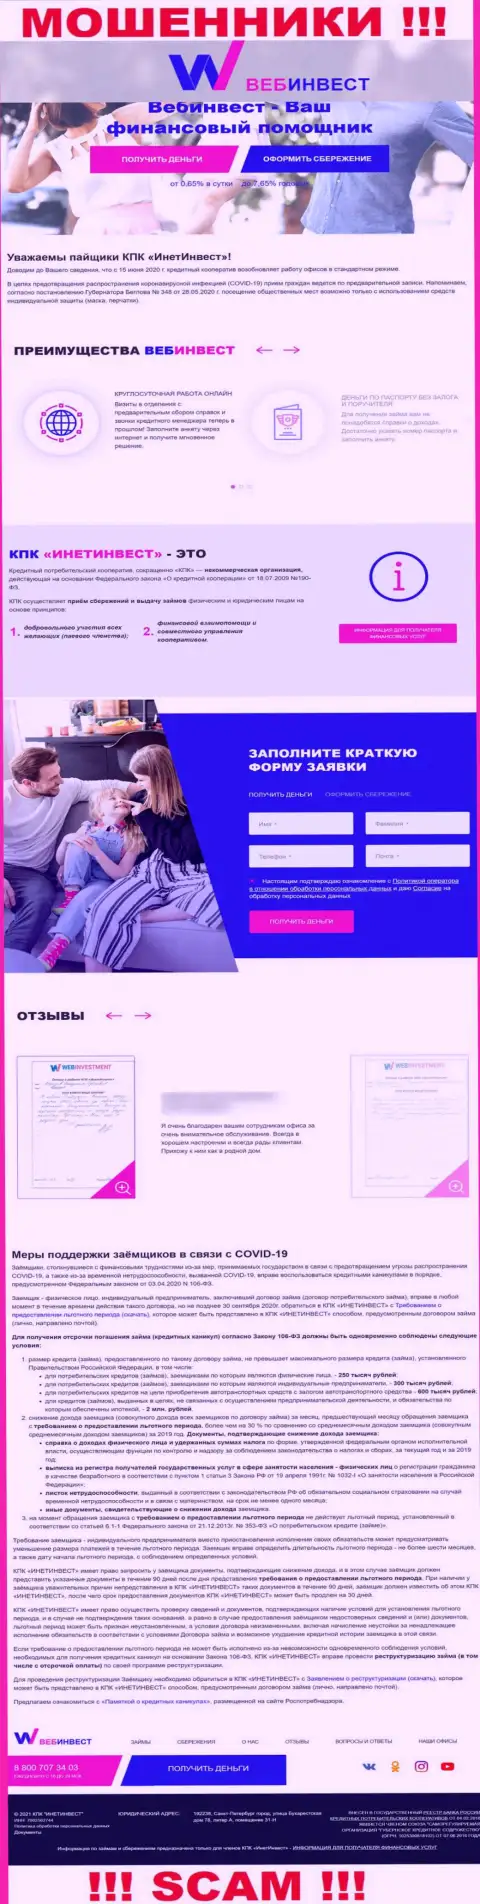 WebInvestment Ru - это официальный сайт internet разводил КПК ИнетИнвест